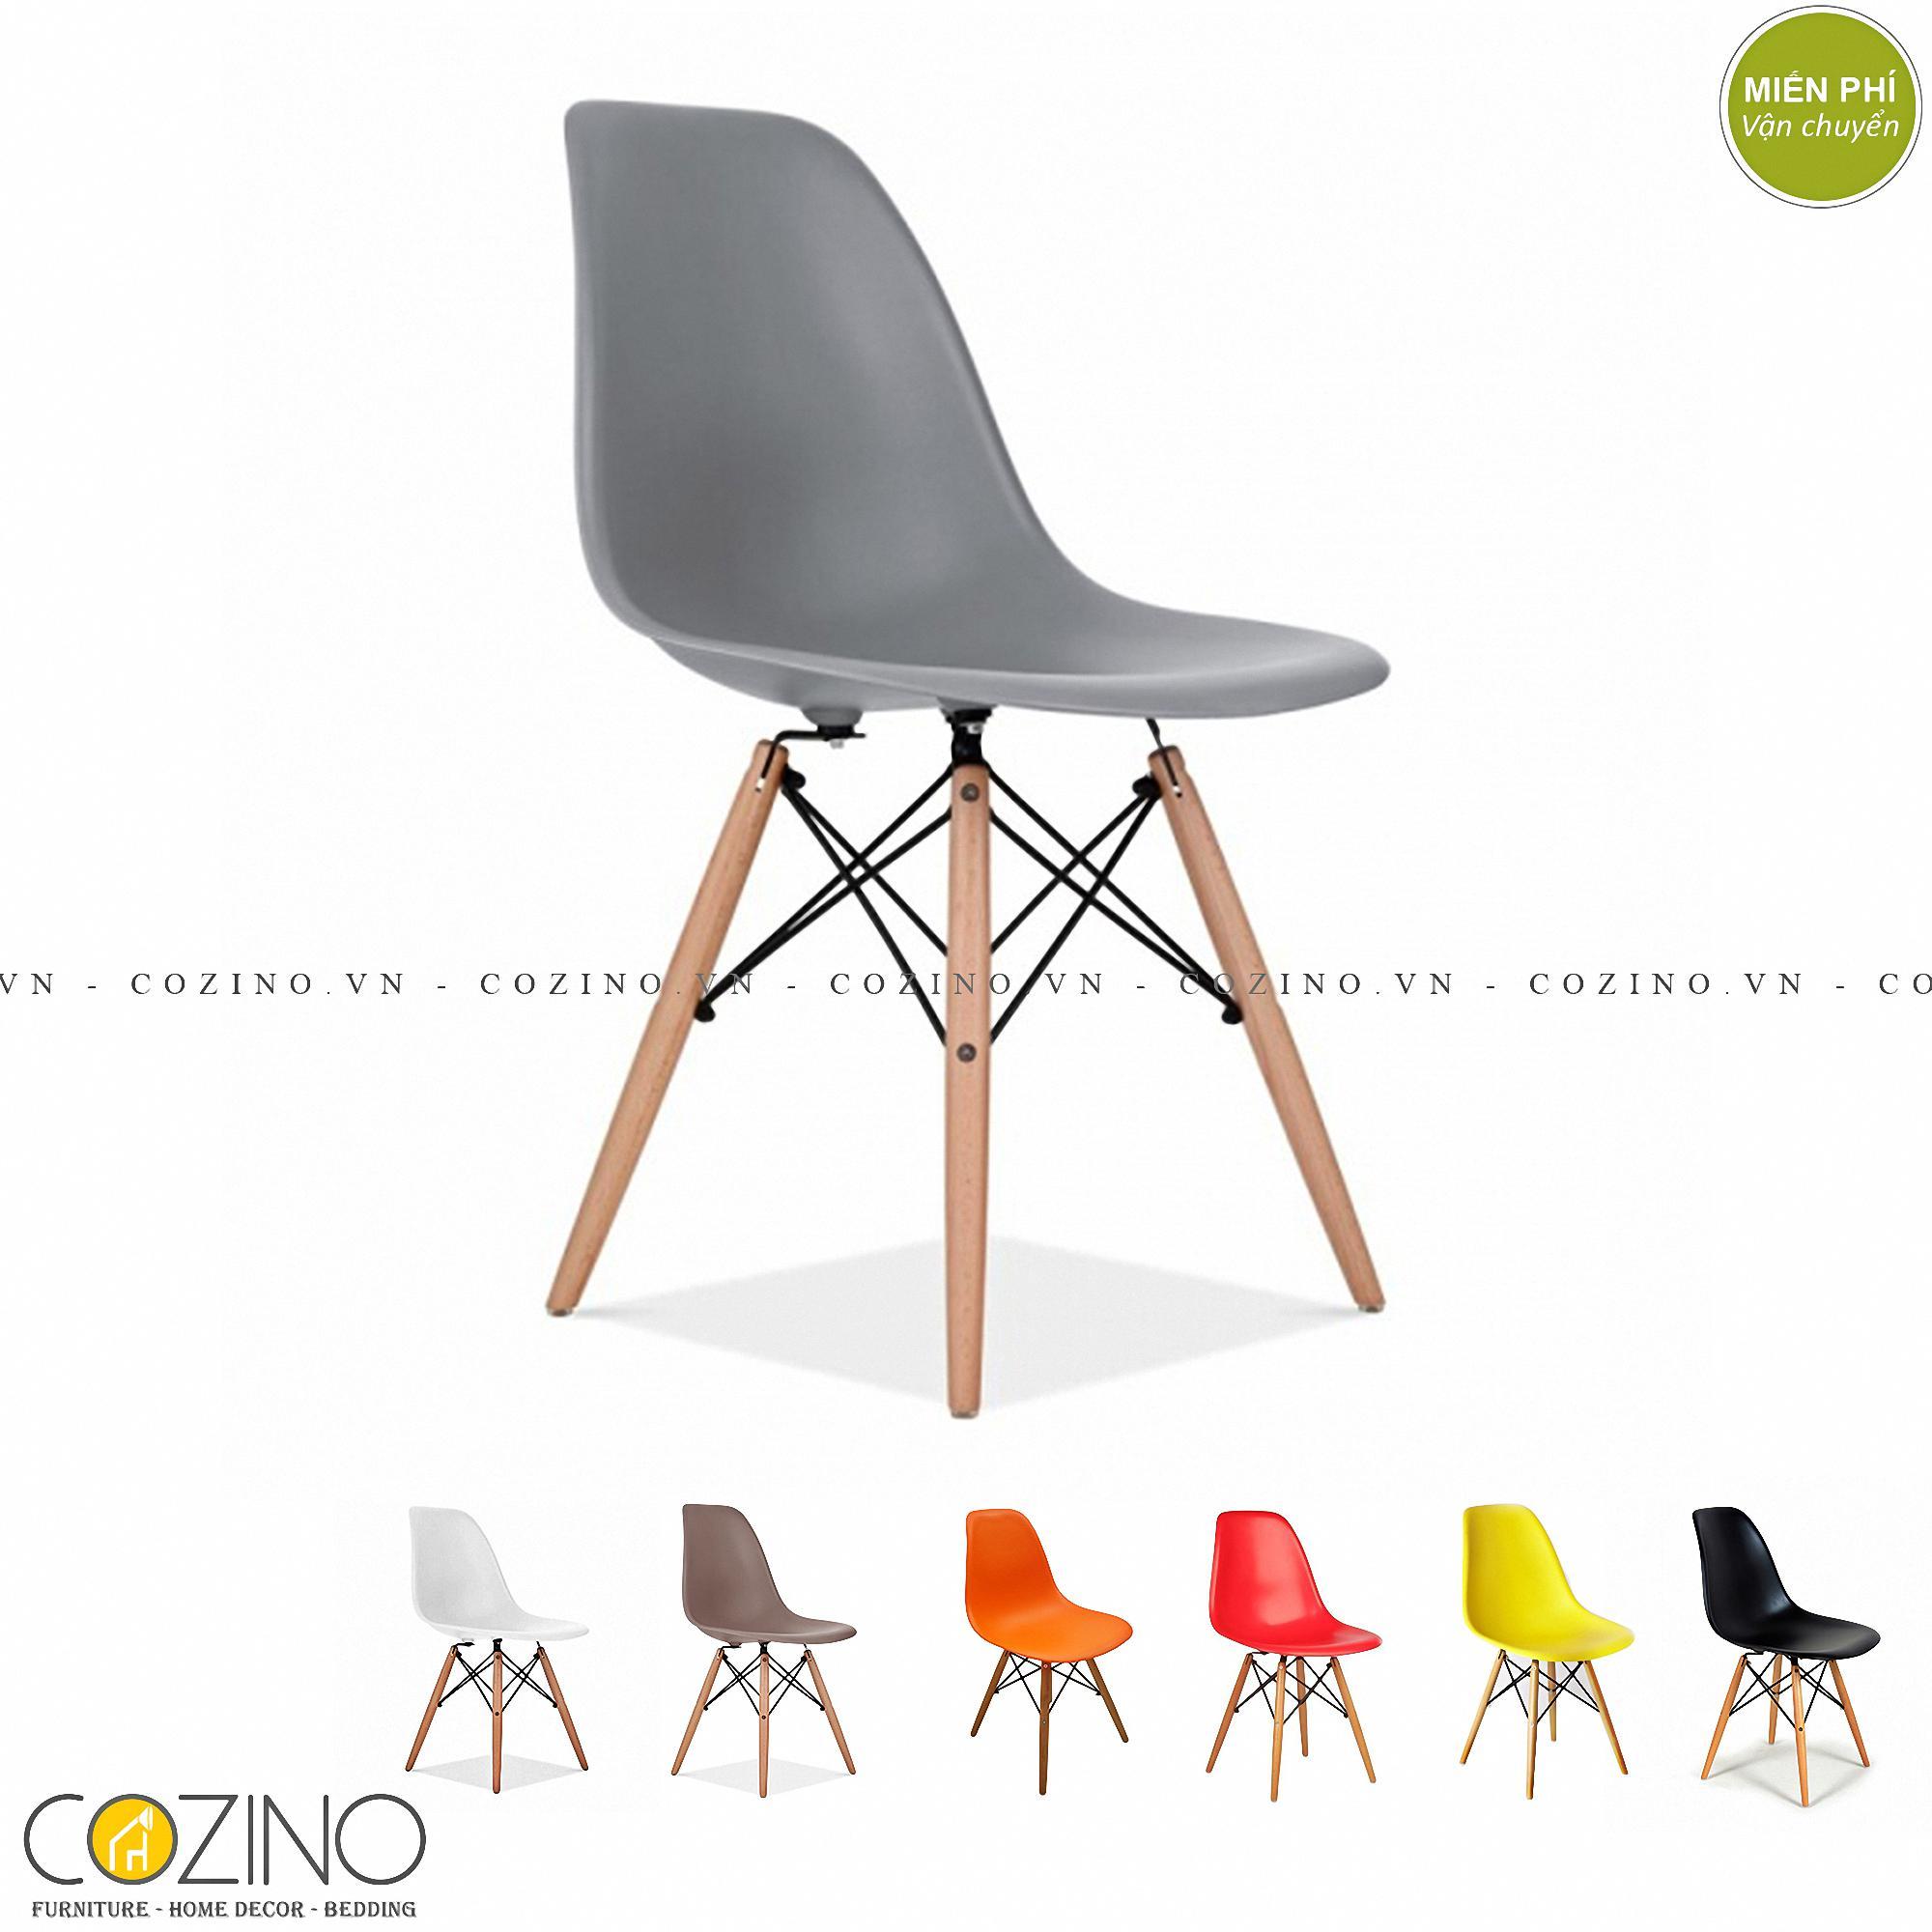 Ghế CZN-Eames màu xám chân gỗ